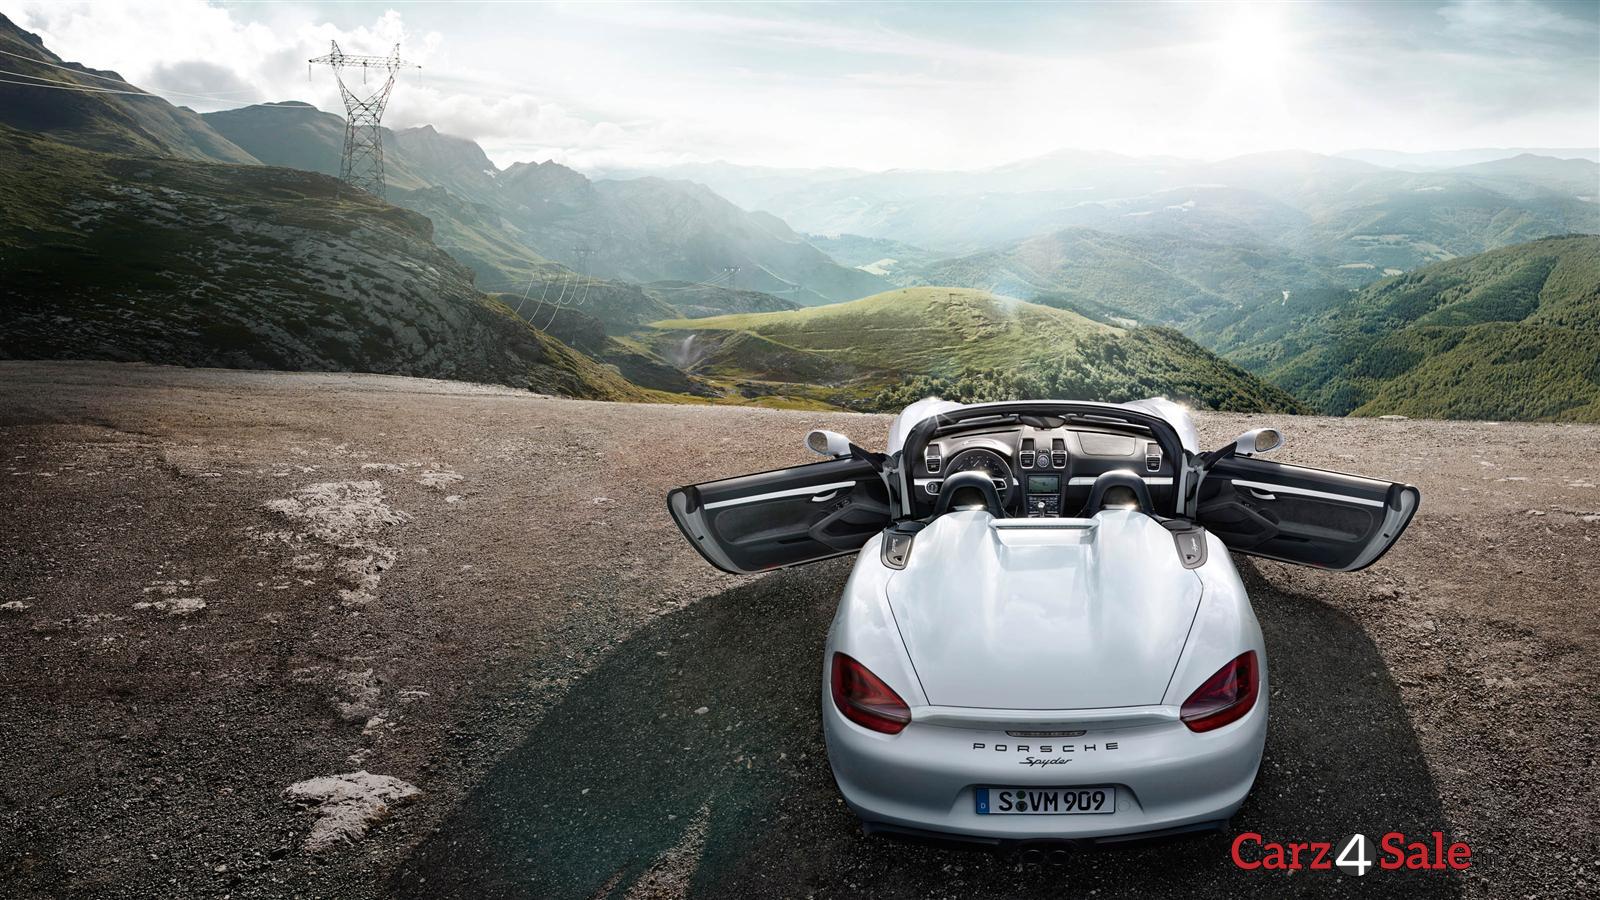 Porsche Boxster Spyder 2016 Top View Rear